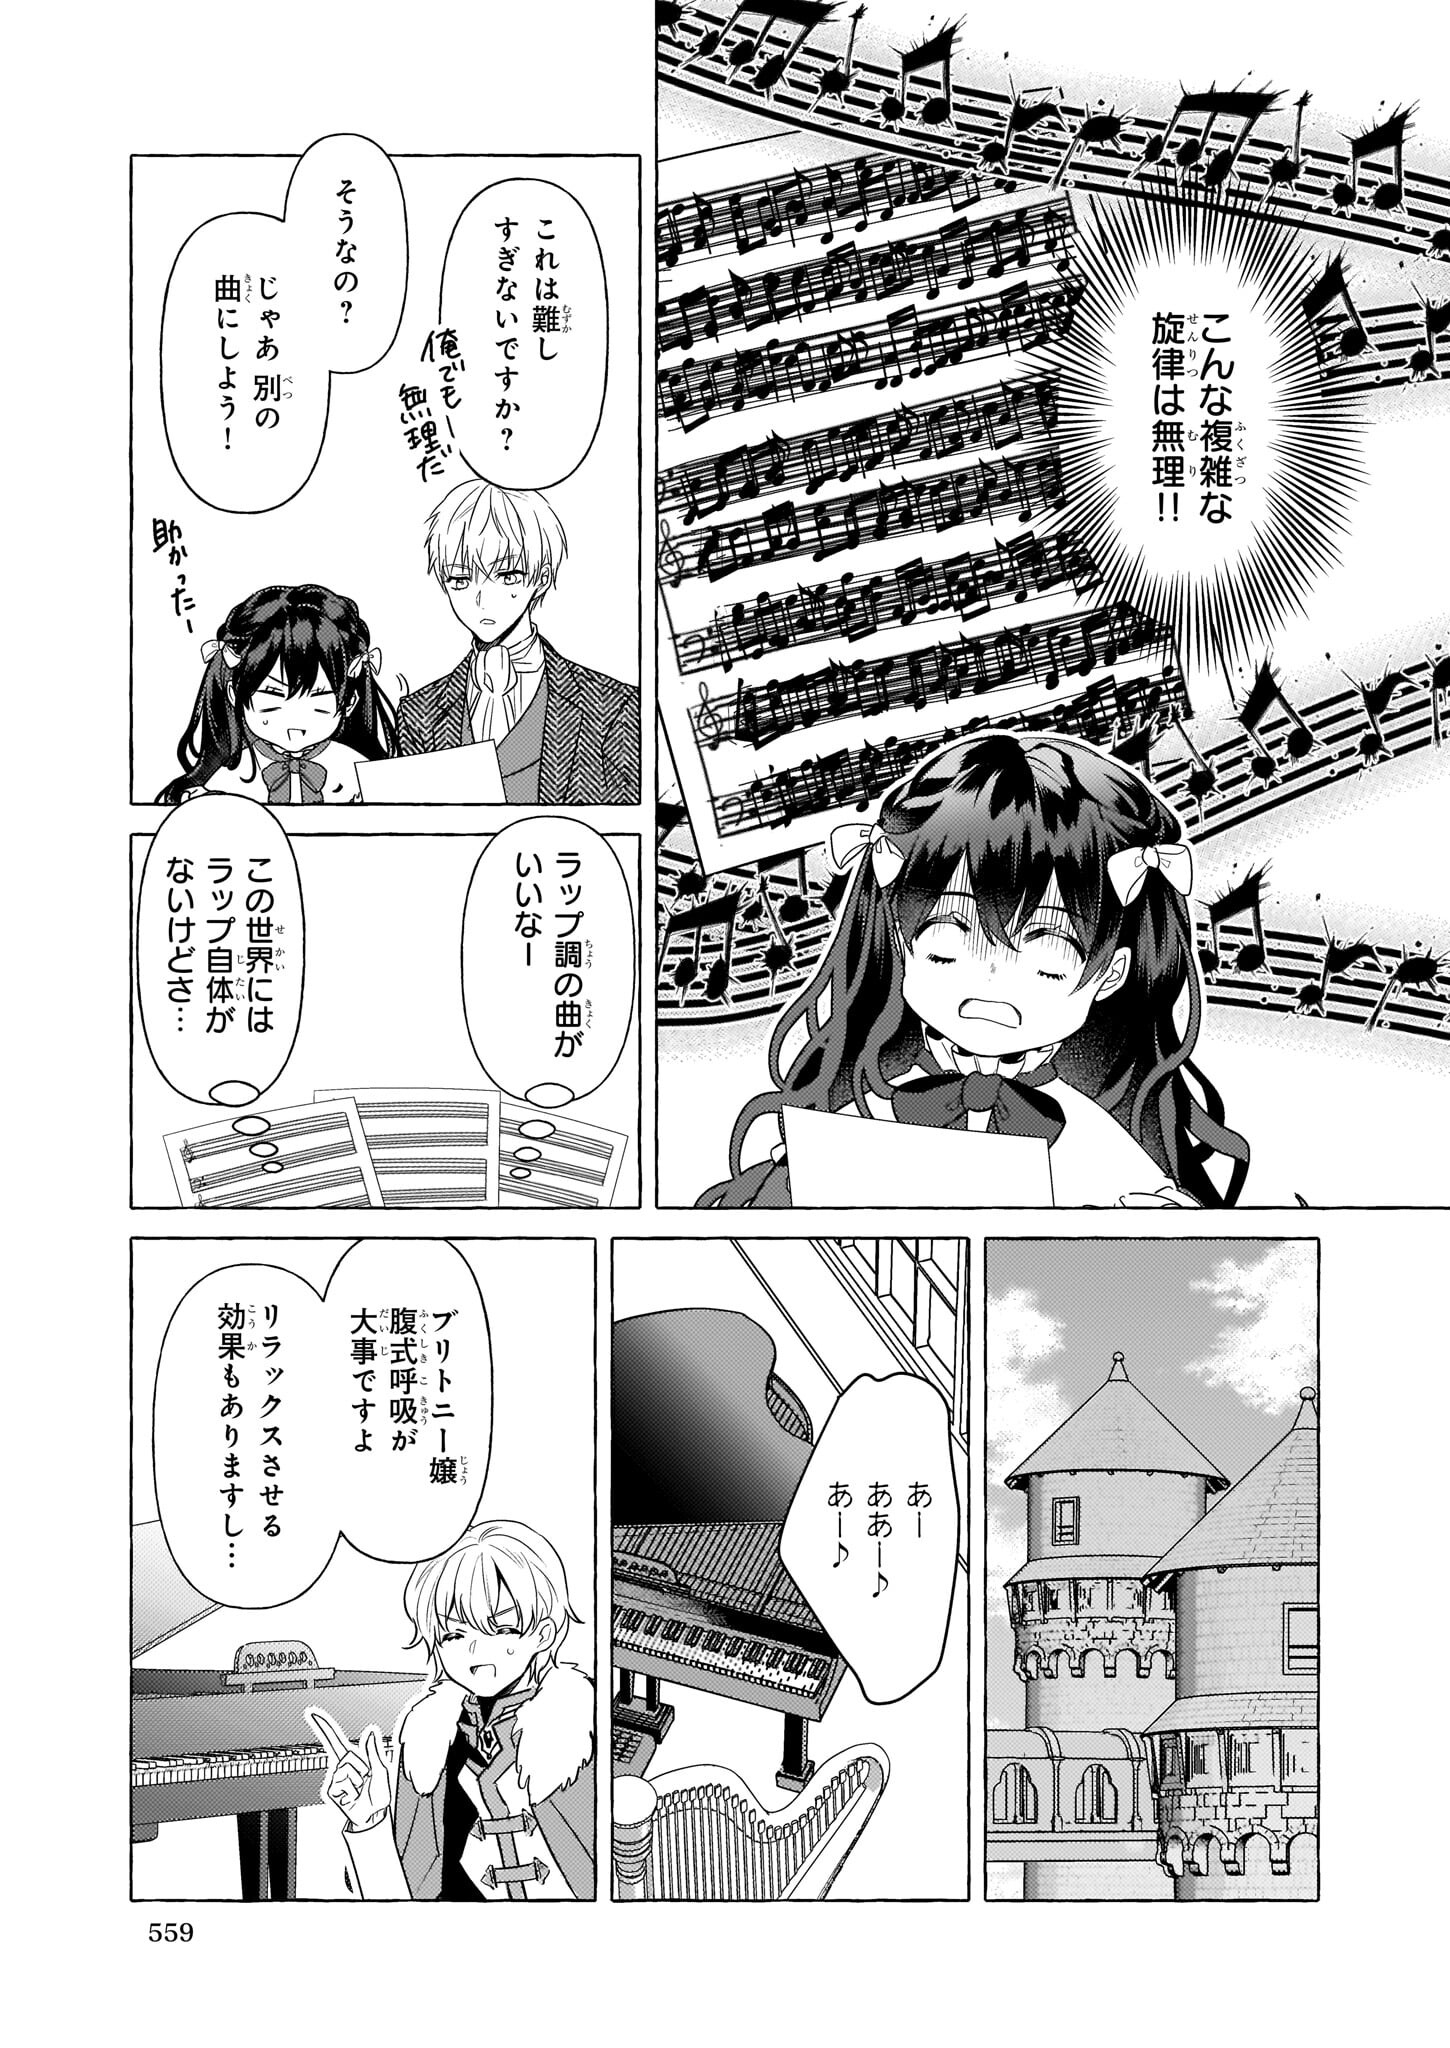 Tenseisaki ga Shoujo Manga no Shirobuta Reijou datta reBoooot! - Chapter 18 - Page 3